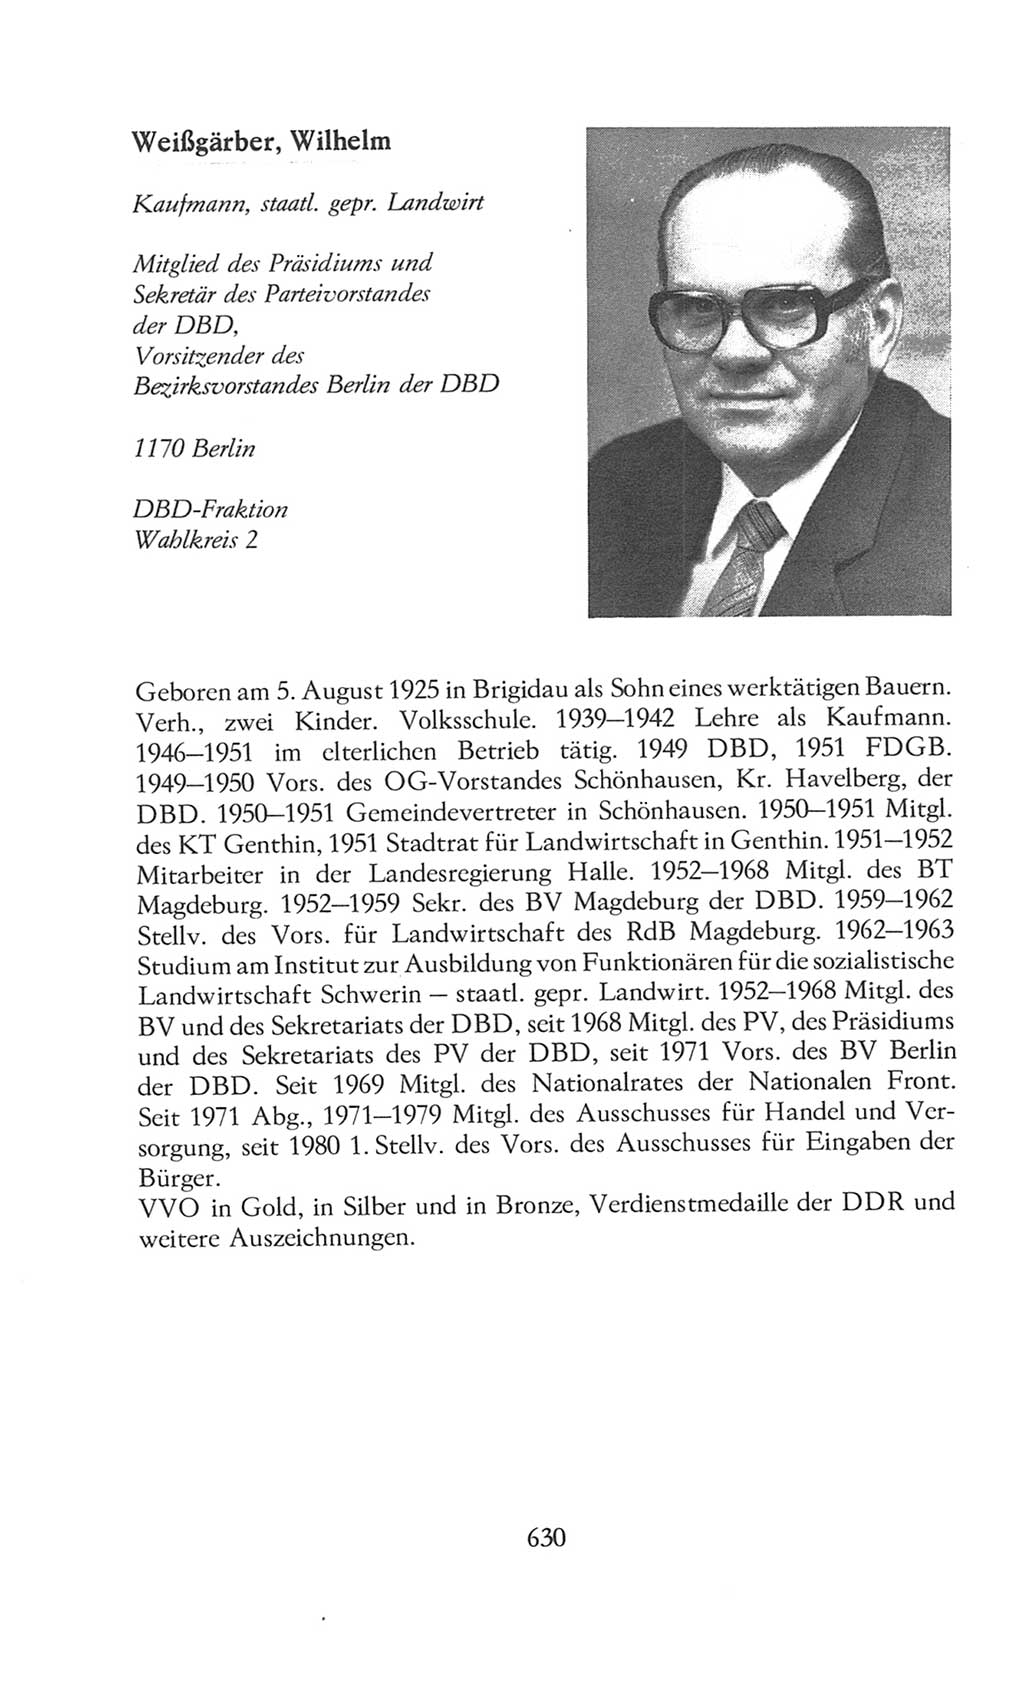 Volkskammer (VK) der Deutschen Demokratischen Republik (DDR), 8. Wahlperiode 1981-1986, Seite 630 (VK. DDR 8. WP. 1981-1986, S. 630)